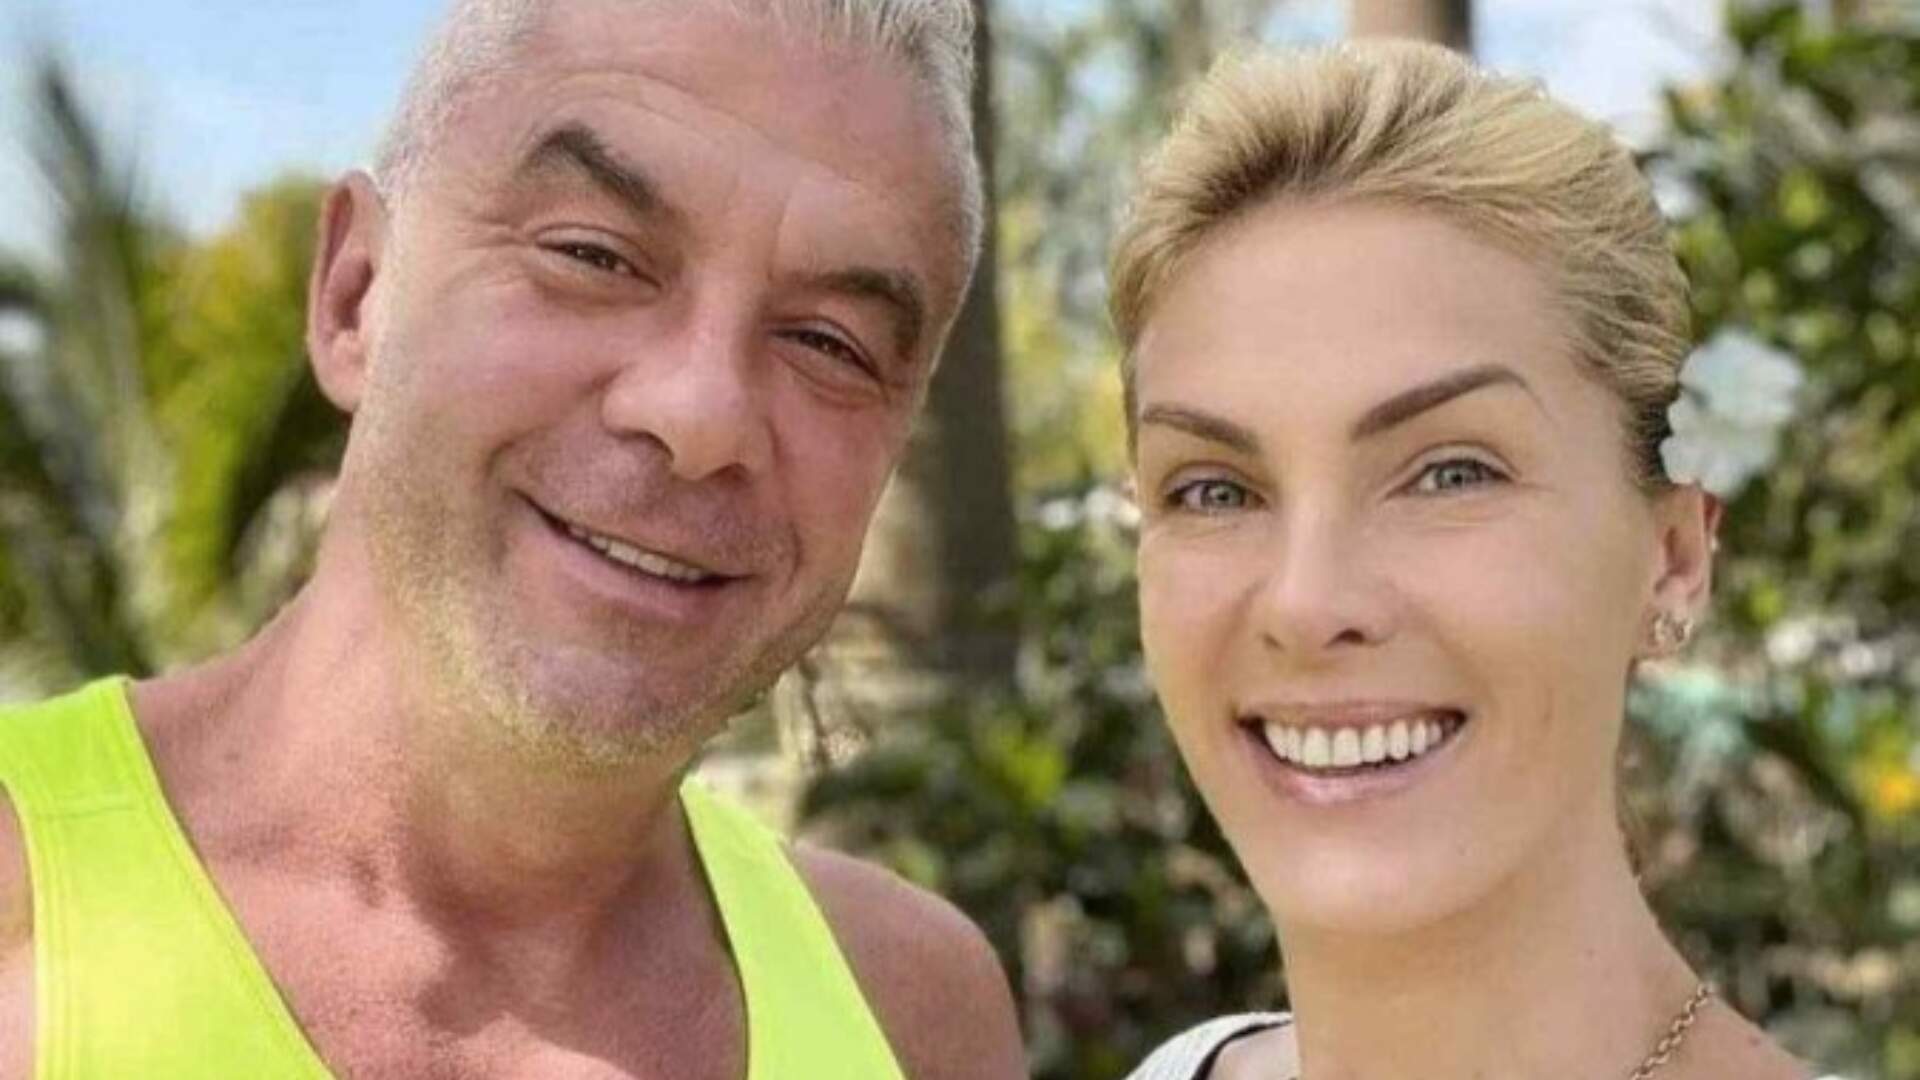 Alexandre Corrêa, marido de Ana Hickmann, admite que mentiu e revela linchamento em padaria - Metropolitana FM